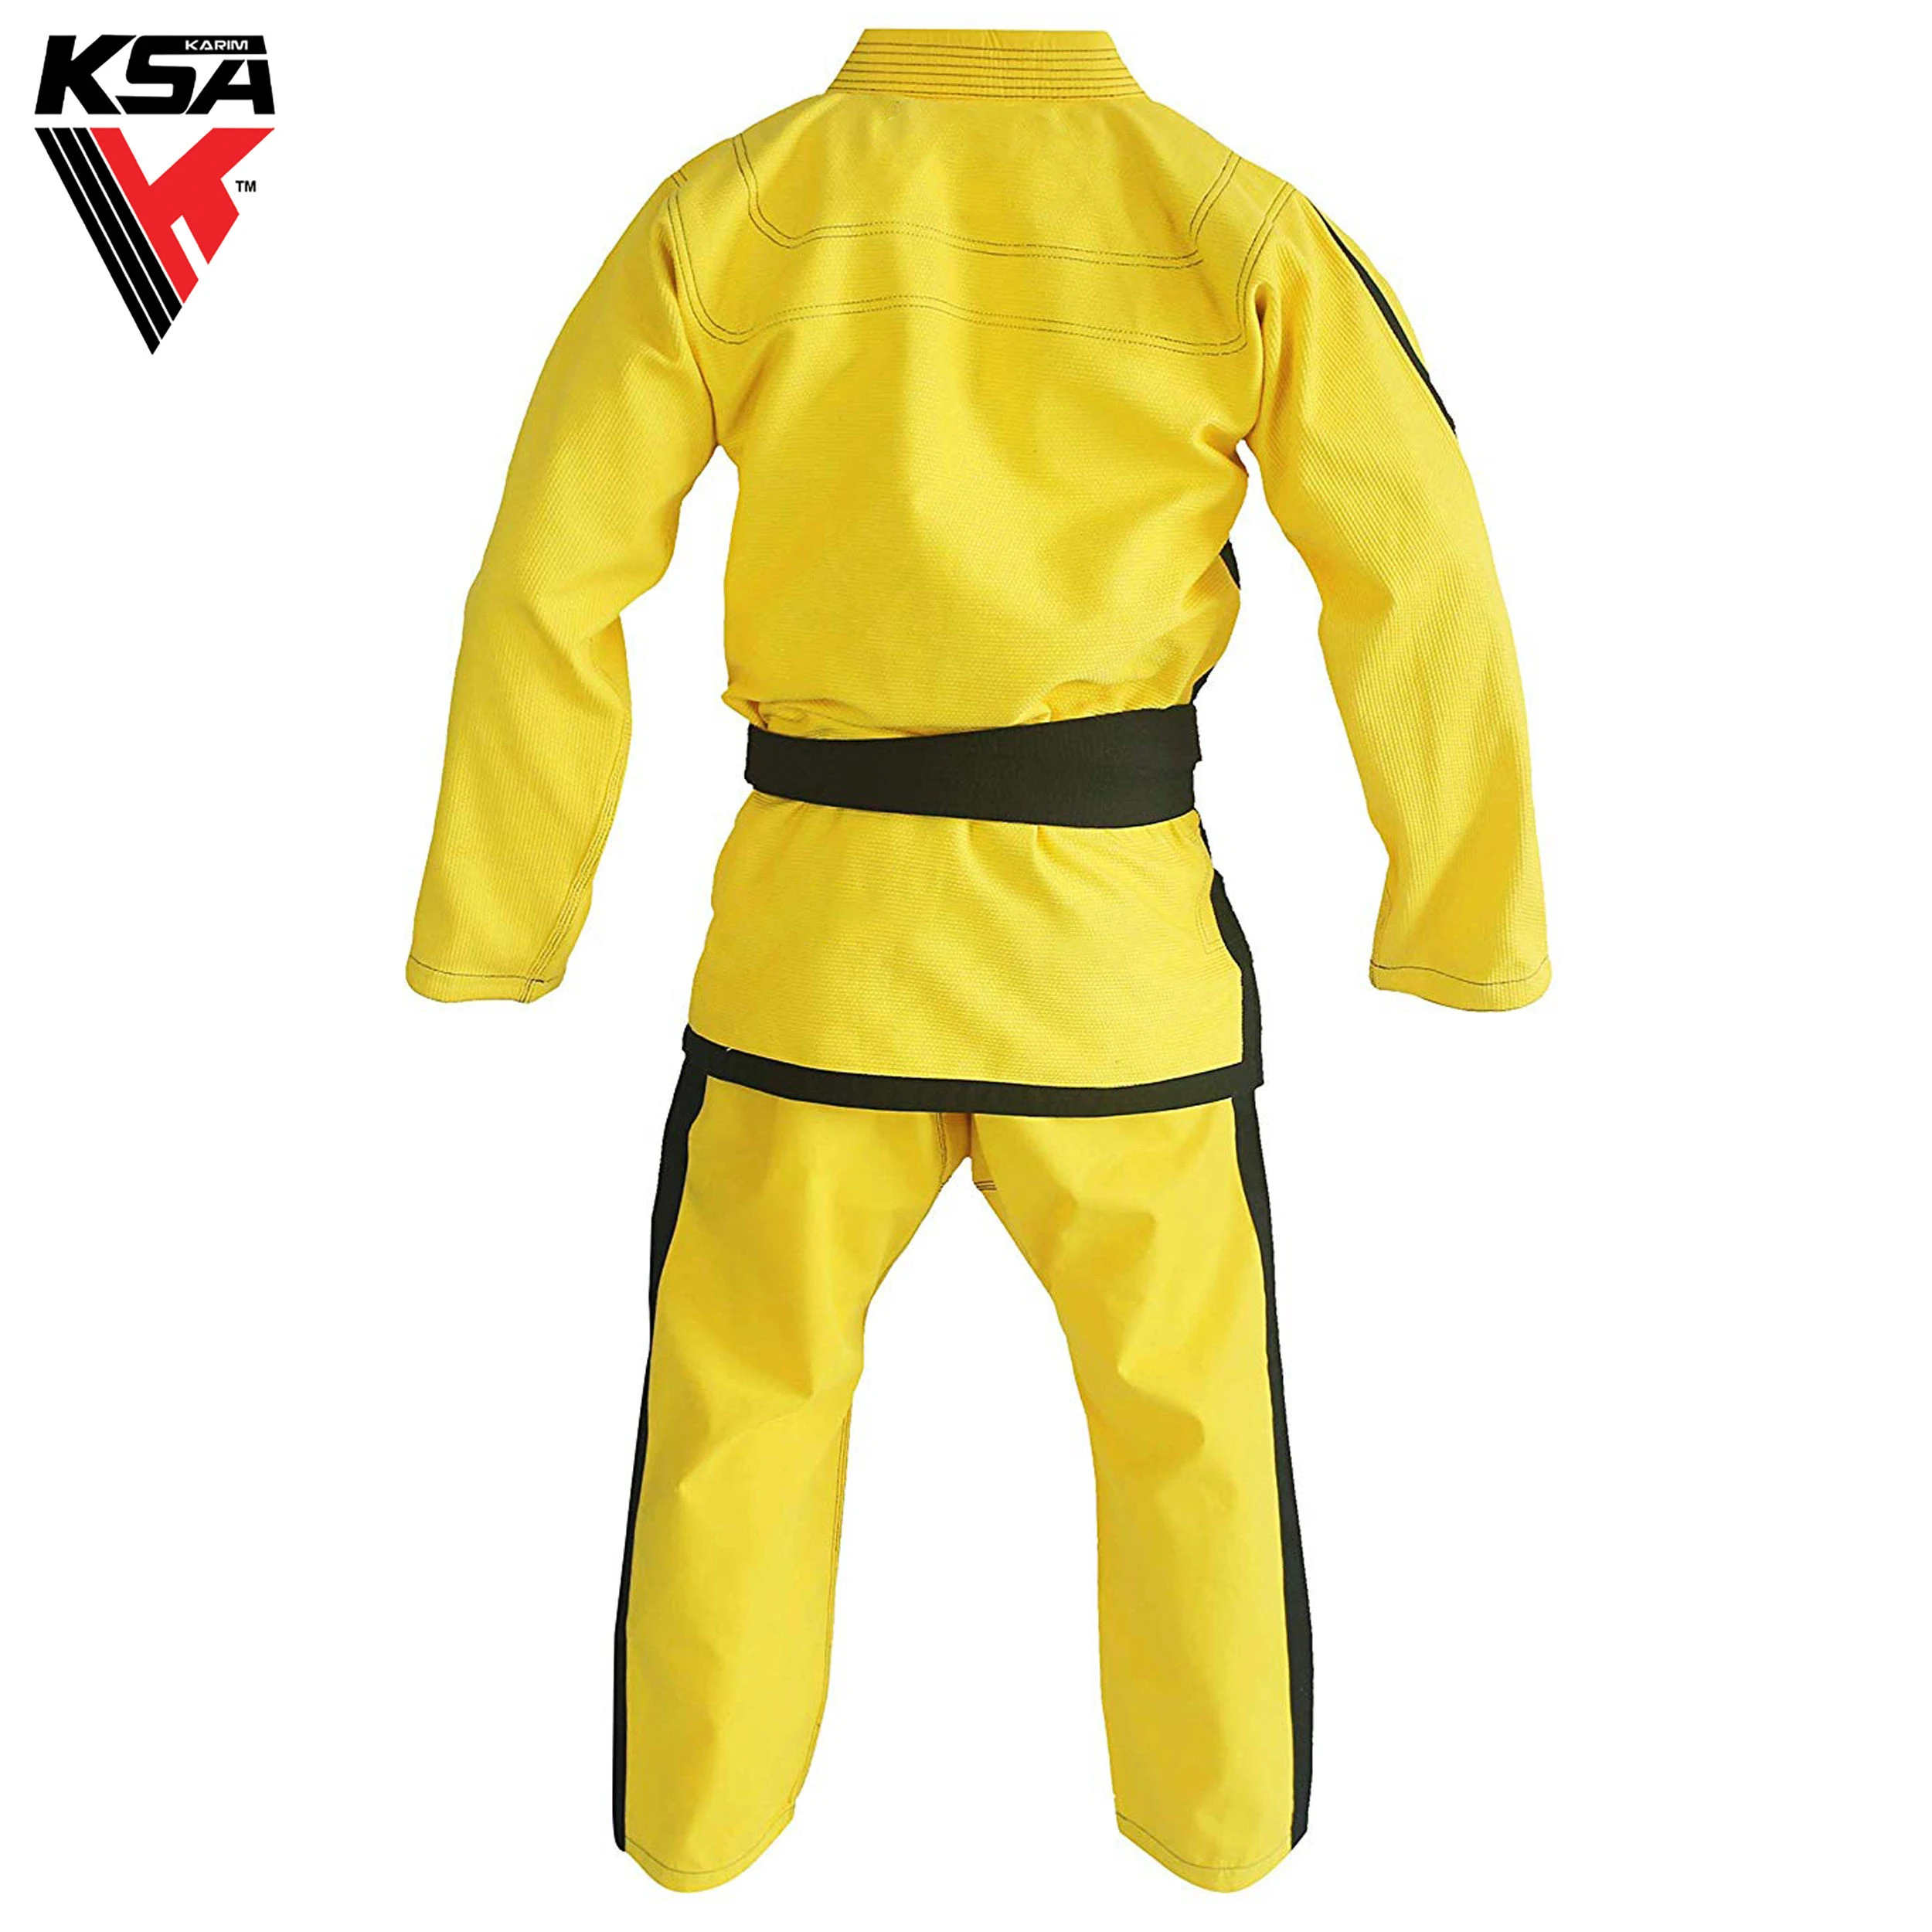 Lightweight BJJ Gi Brazilian Jiu Jitsu Gi Uniform Easy And Comfortable To Wear Karate Suits.